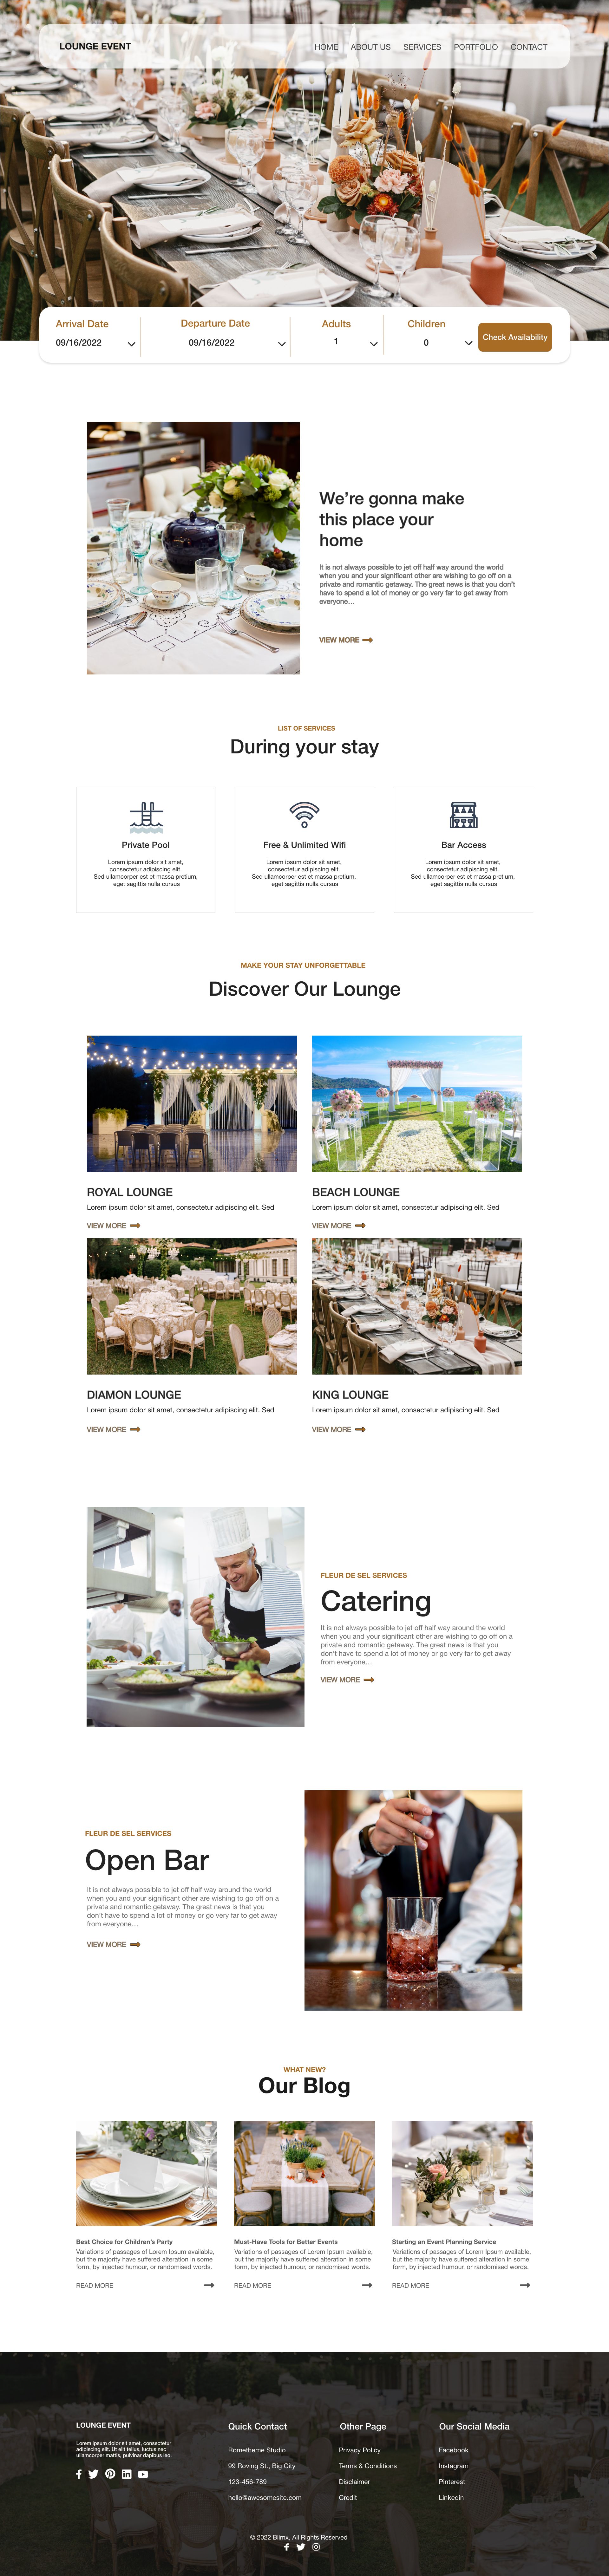 Events & Parties Website Design